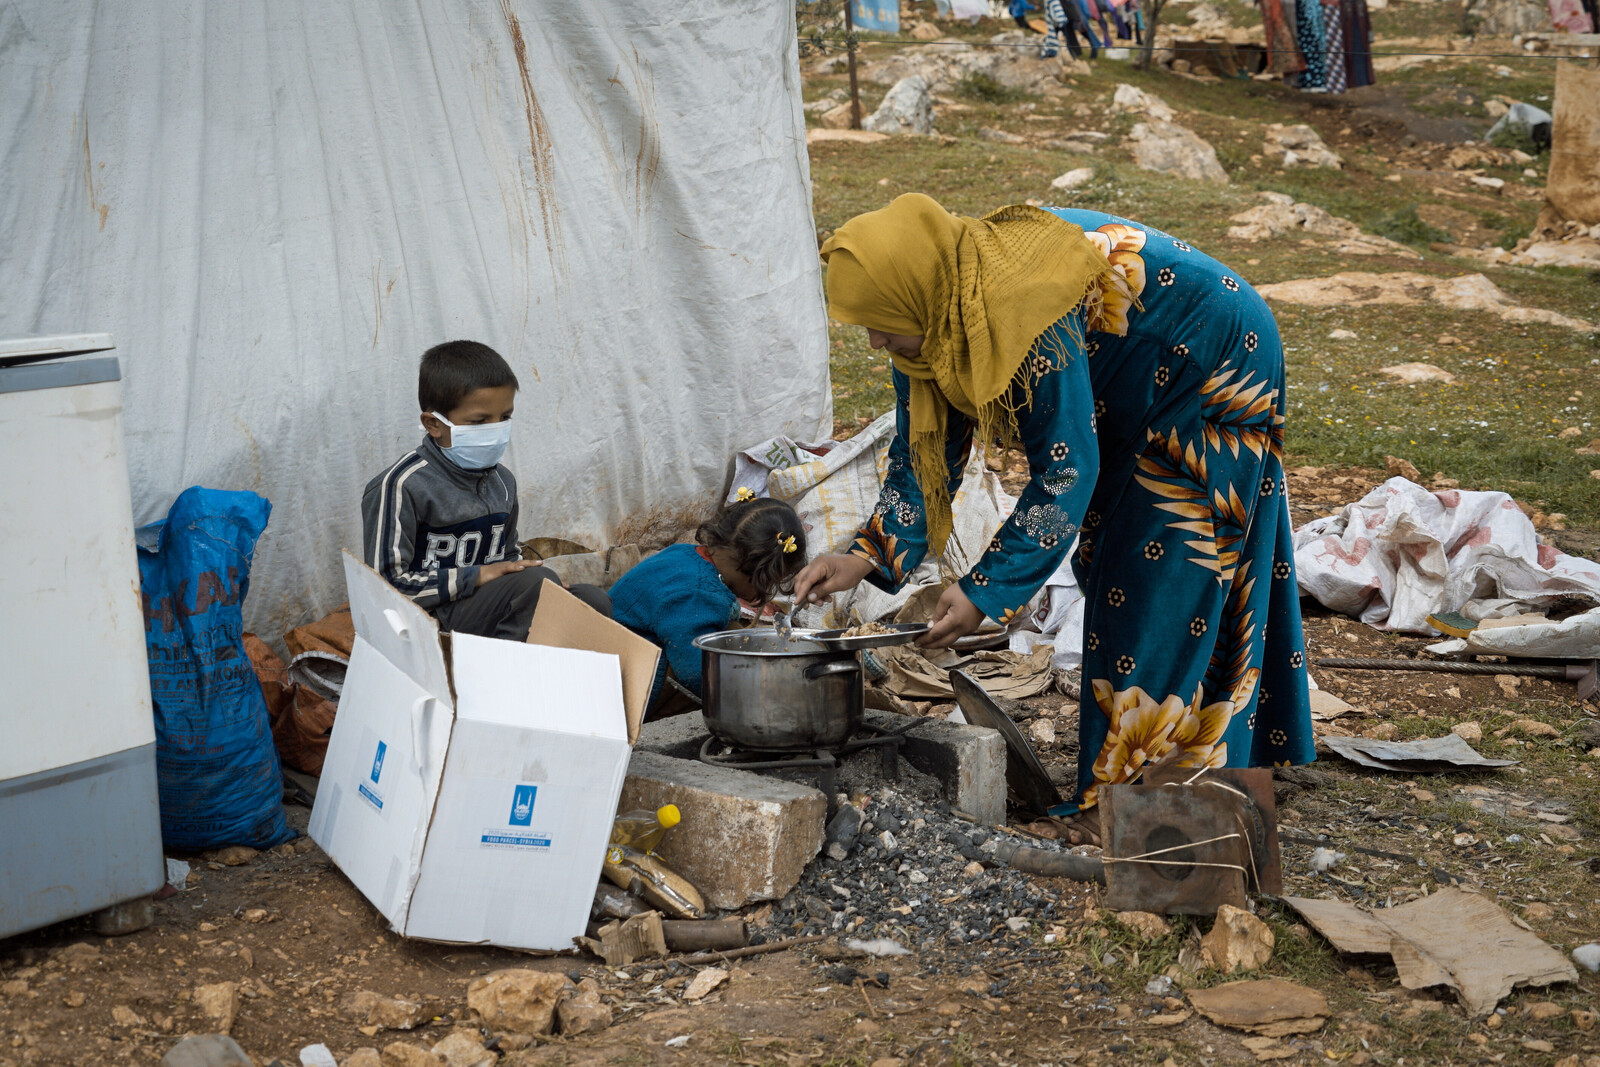 Frau und Kinder, die als Binnenvertriebene in einer Notunterkunft in Syrien leben (Symbolbild)